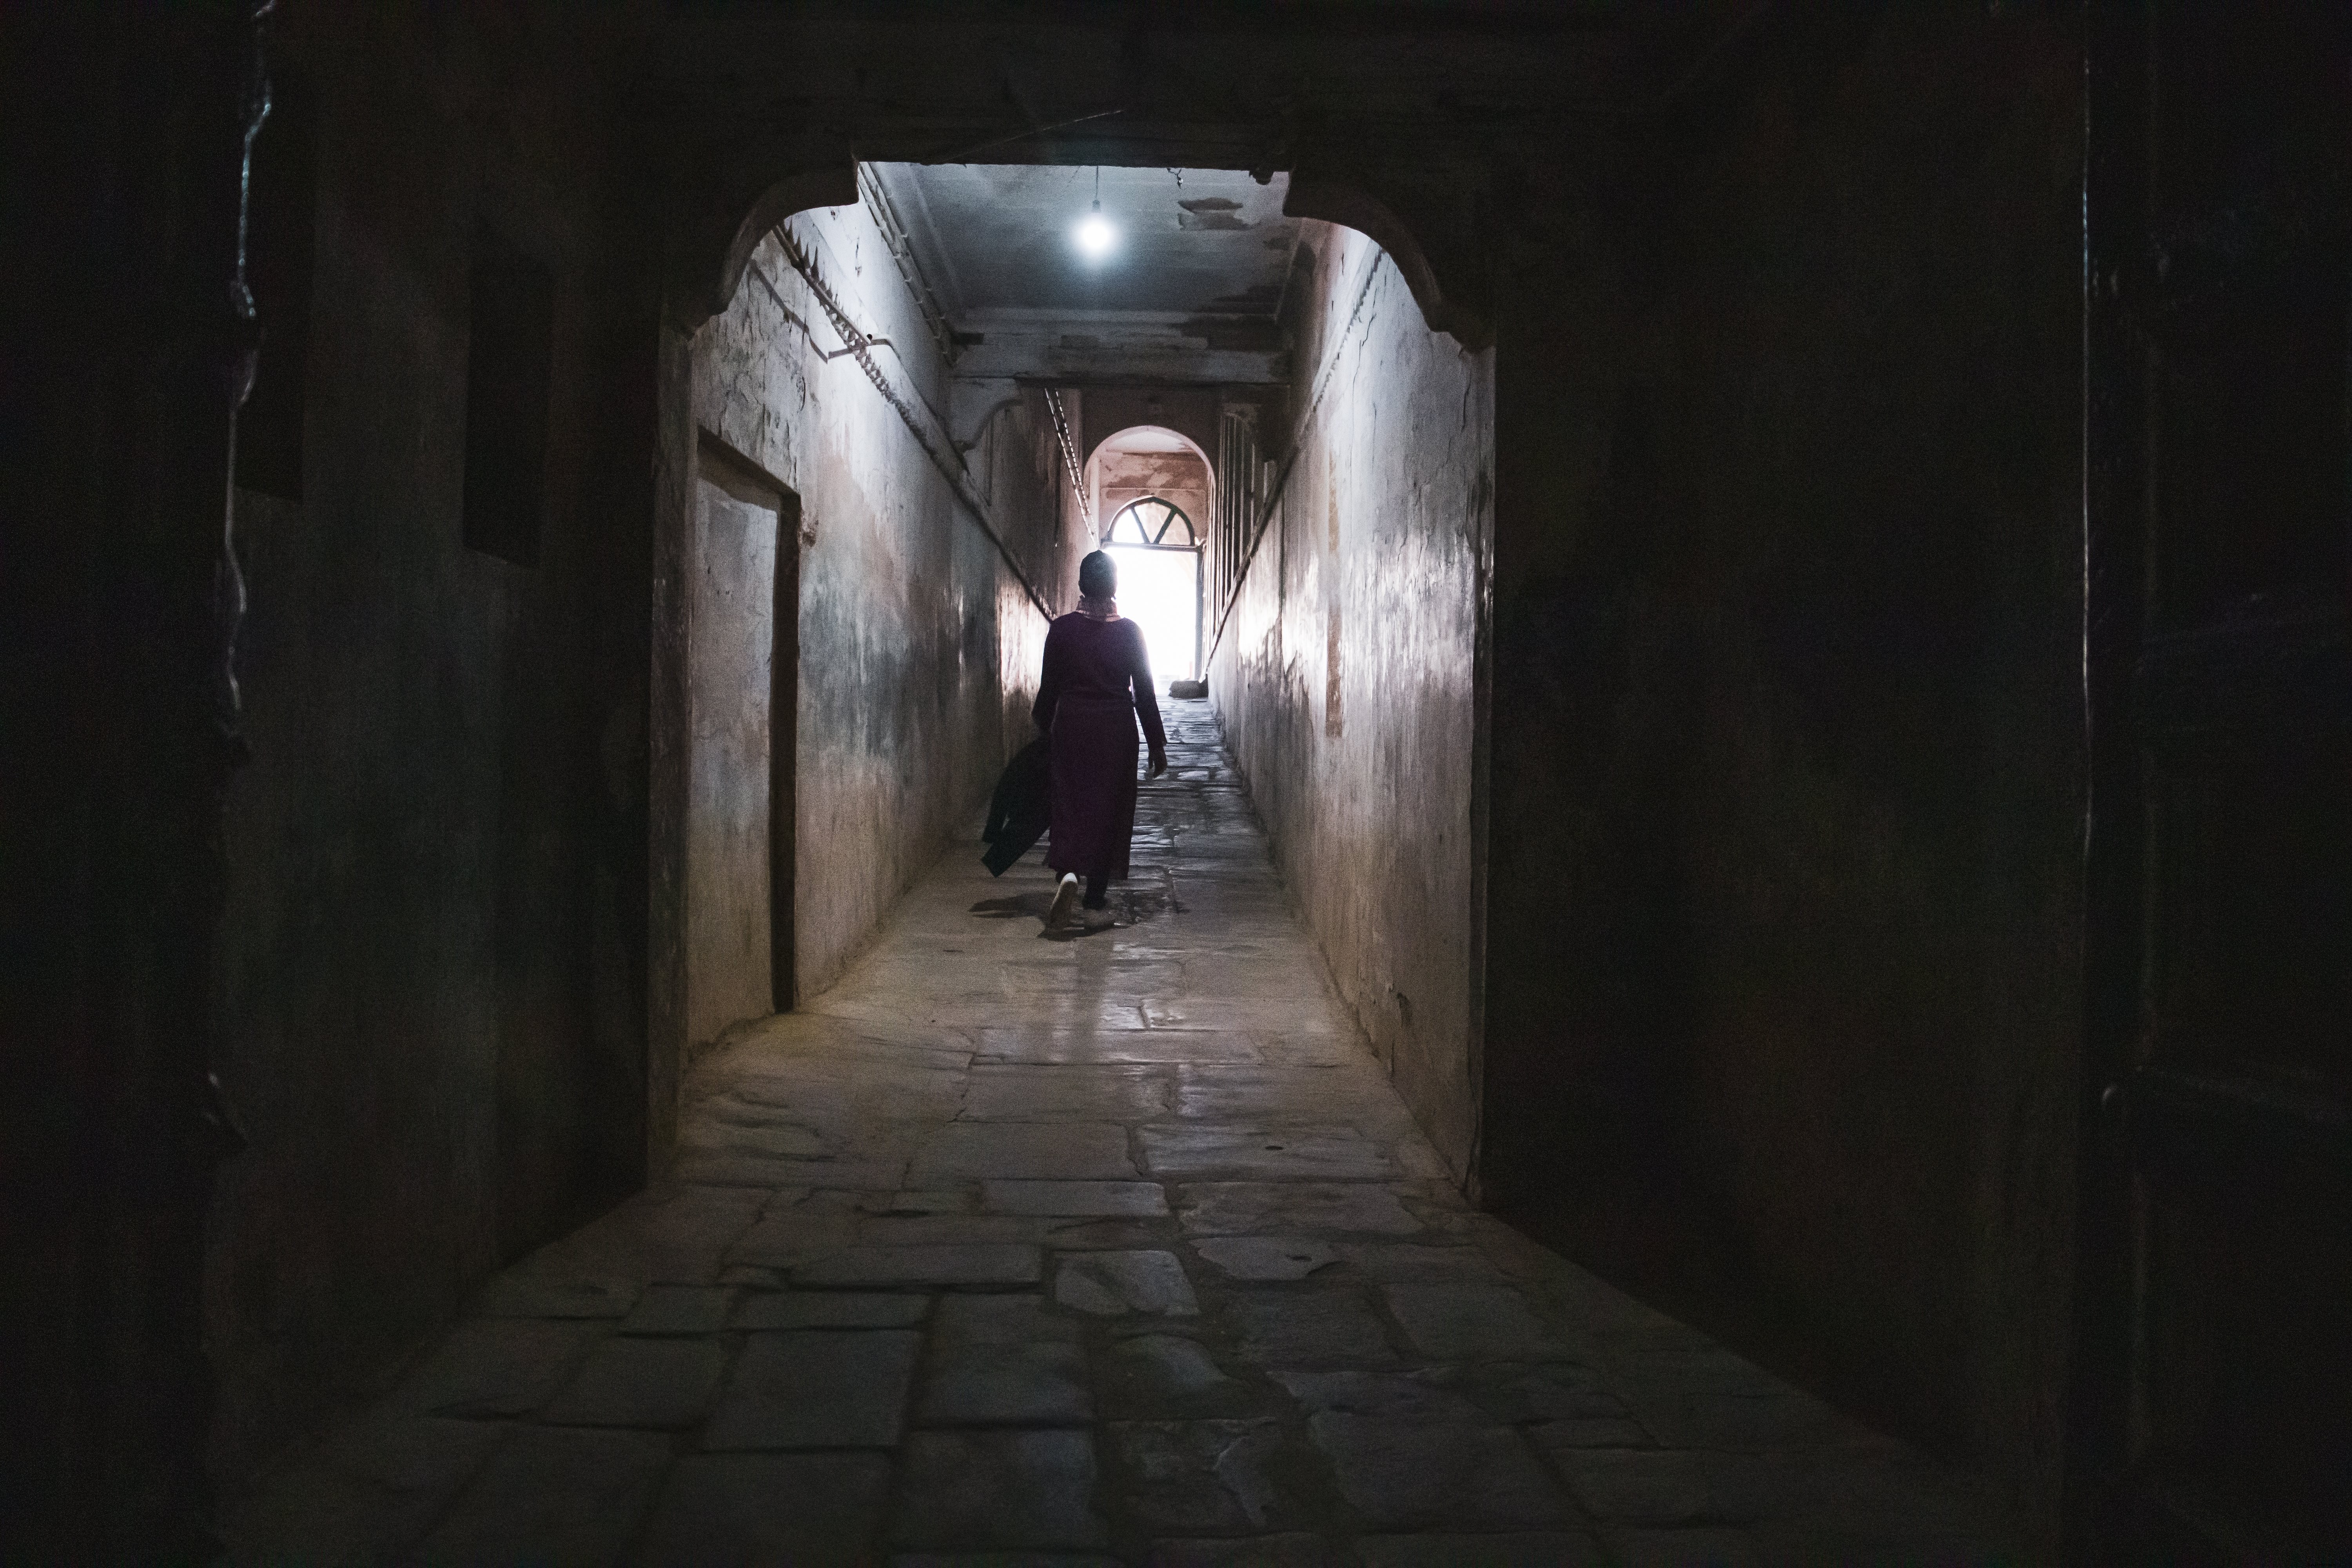 La persona stagliata cammina lungo un tunnel Foto 